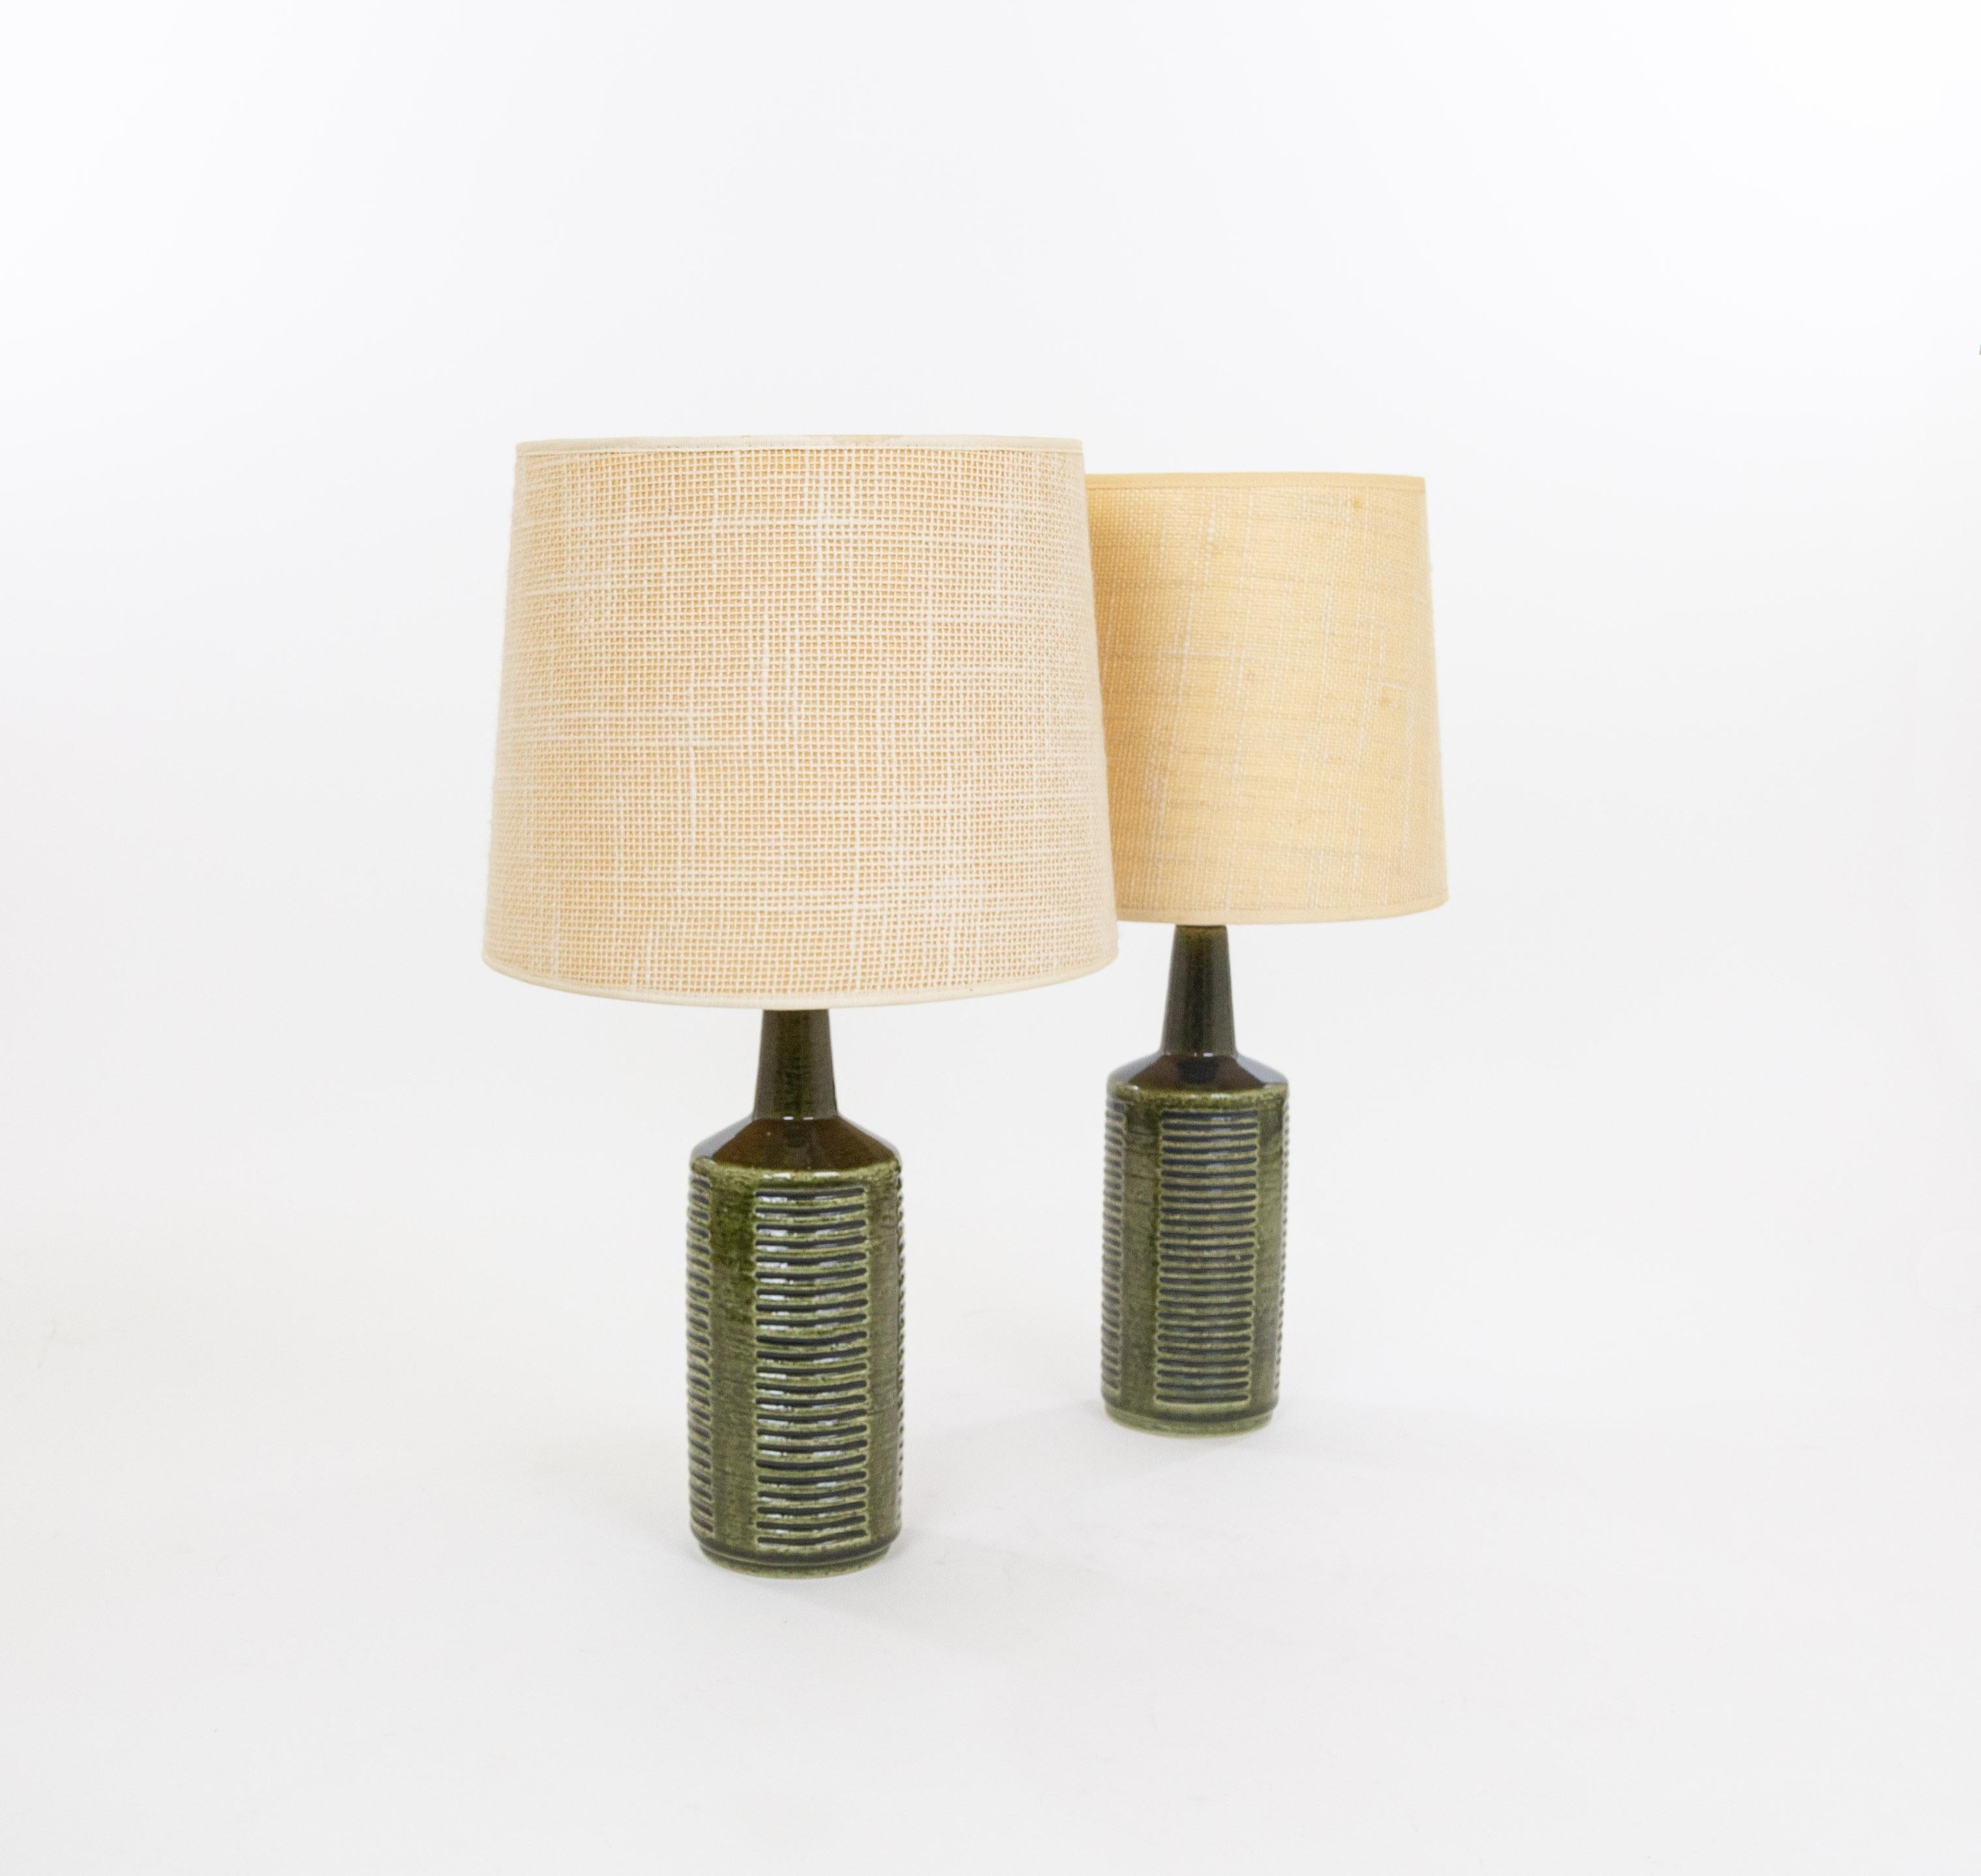 Ein Paar Tischlampen Modell DL/30, hergestellt von Annelise und Per Linnemann-Schmidt für Palshus in den 1960er Jahren. Die Farbe der beiden handgefertigten dekorierten Lampen ist Grün mit blauen Details. Sie haben beeindruckende, geometrische